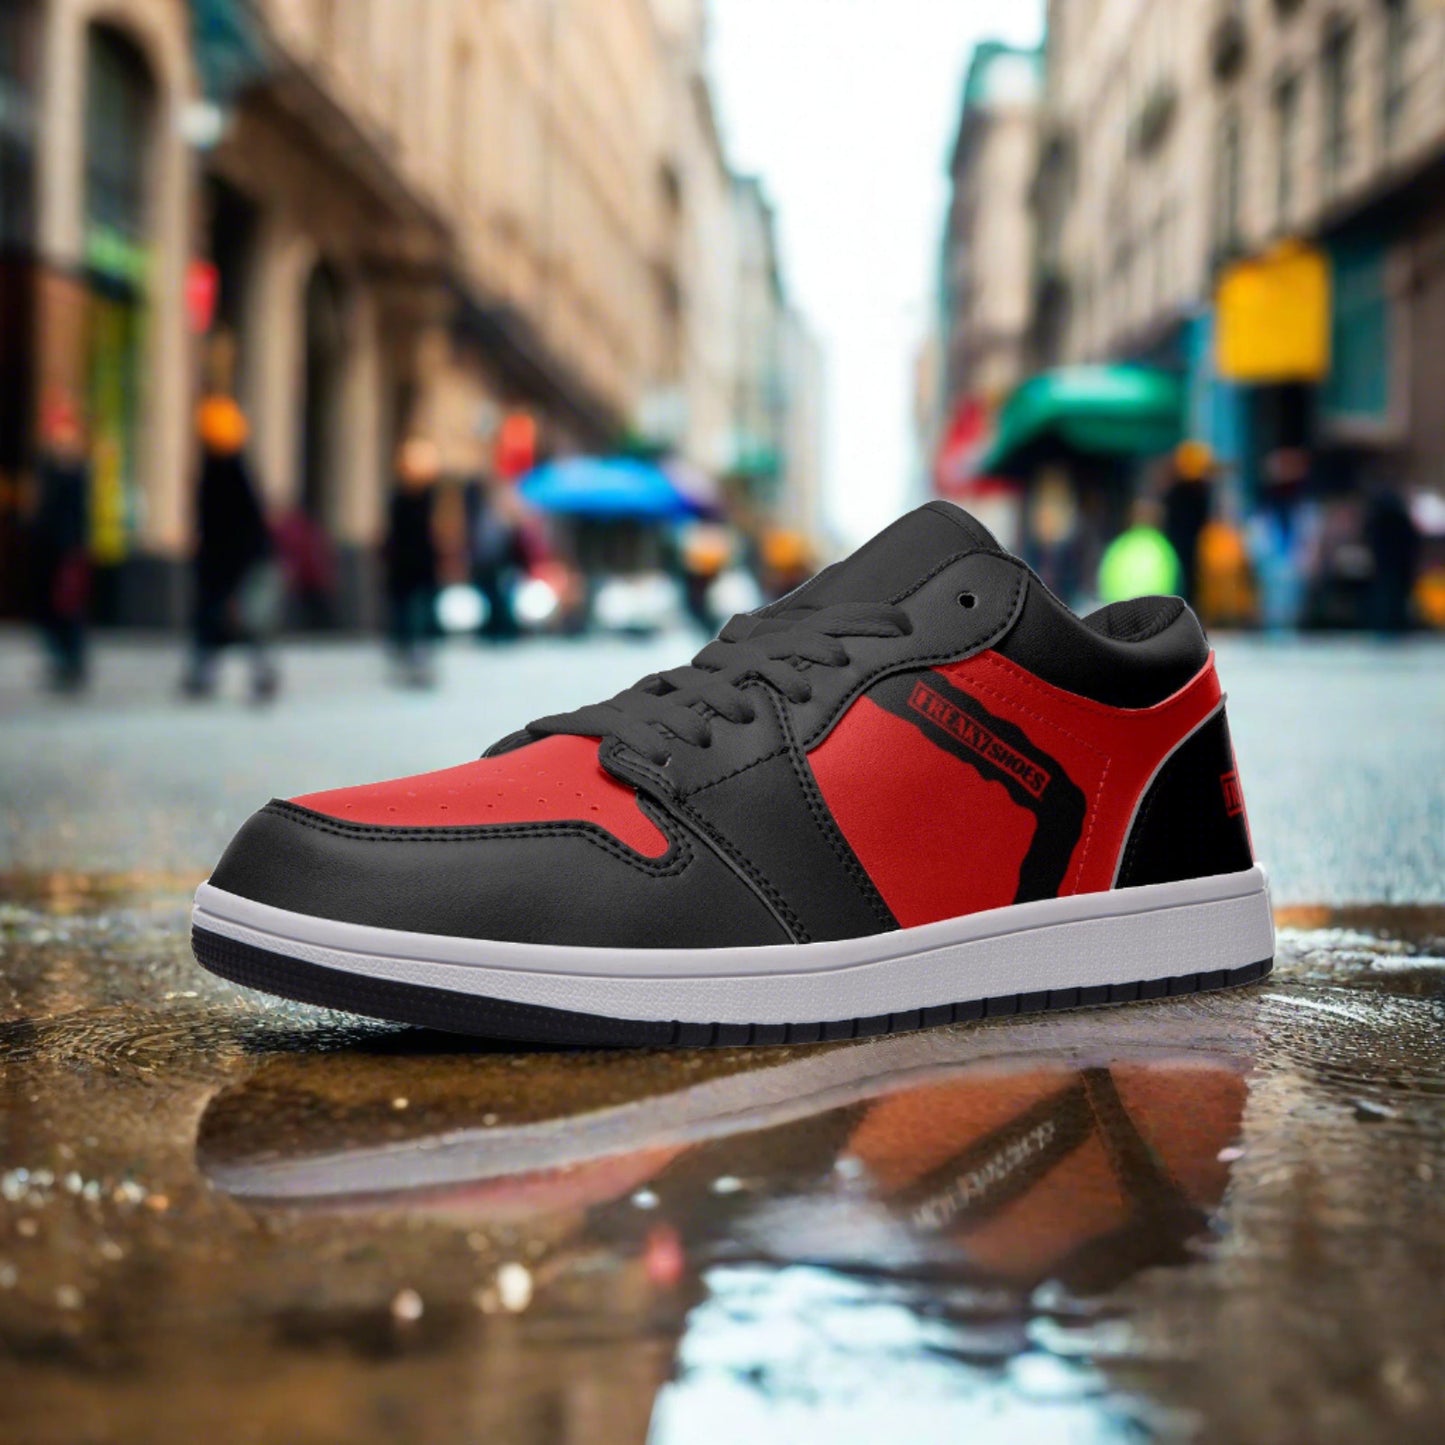 Freaky Shoes® Kırmızı & Siyah Unisex Düşük Bilekli Deri Spor Ayakkabı